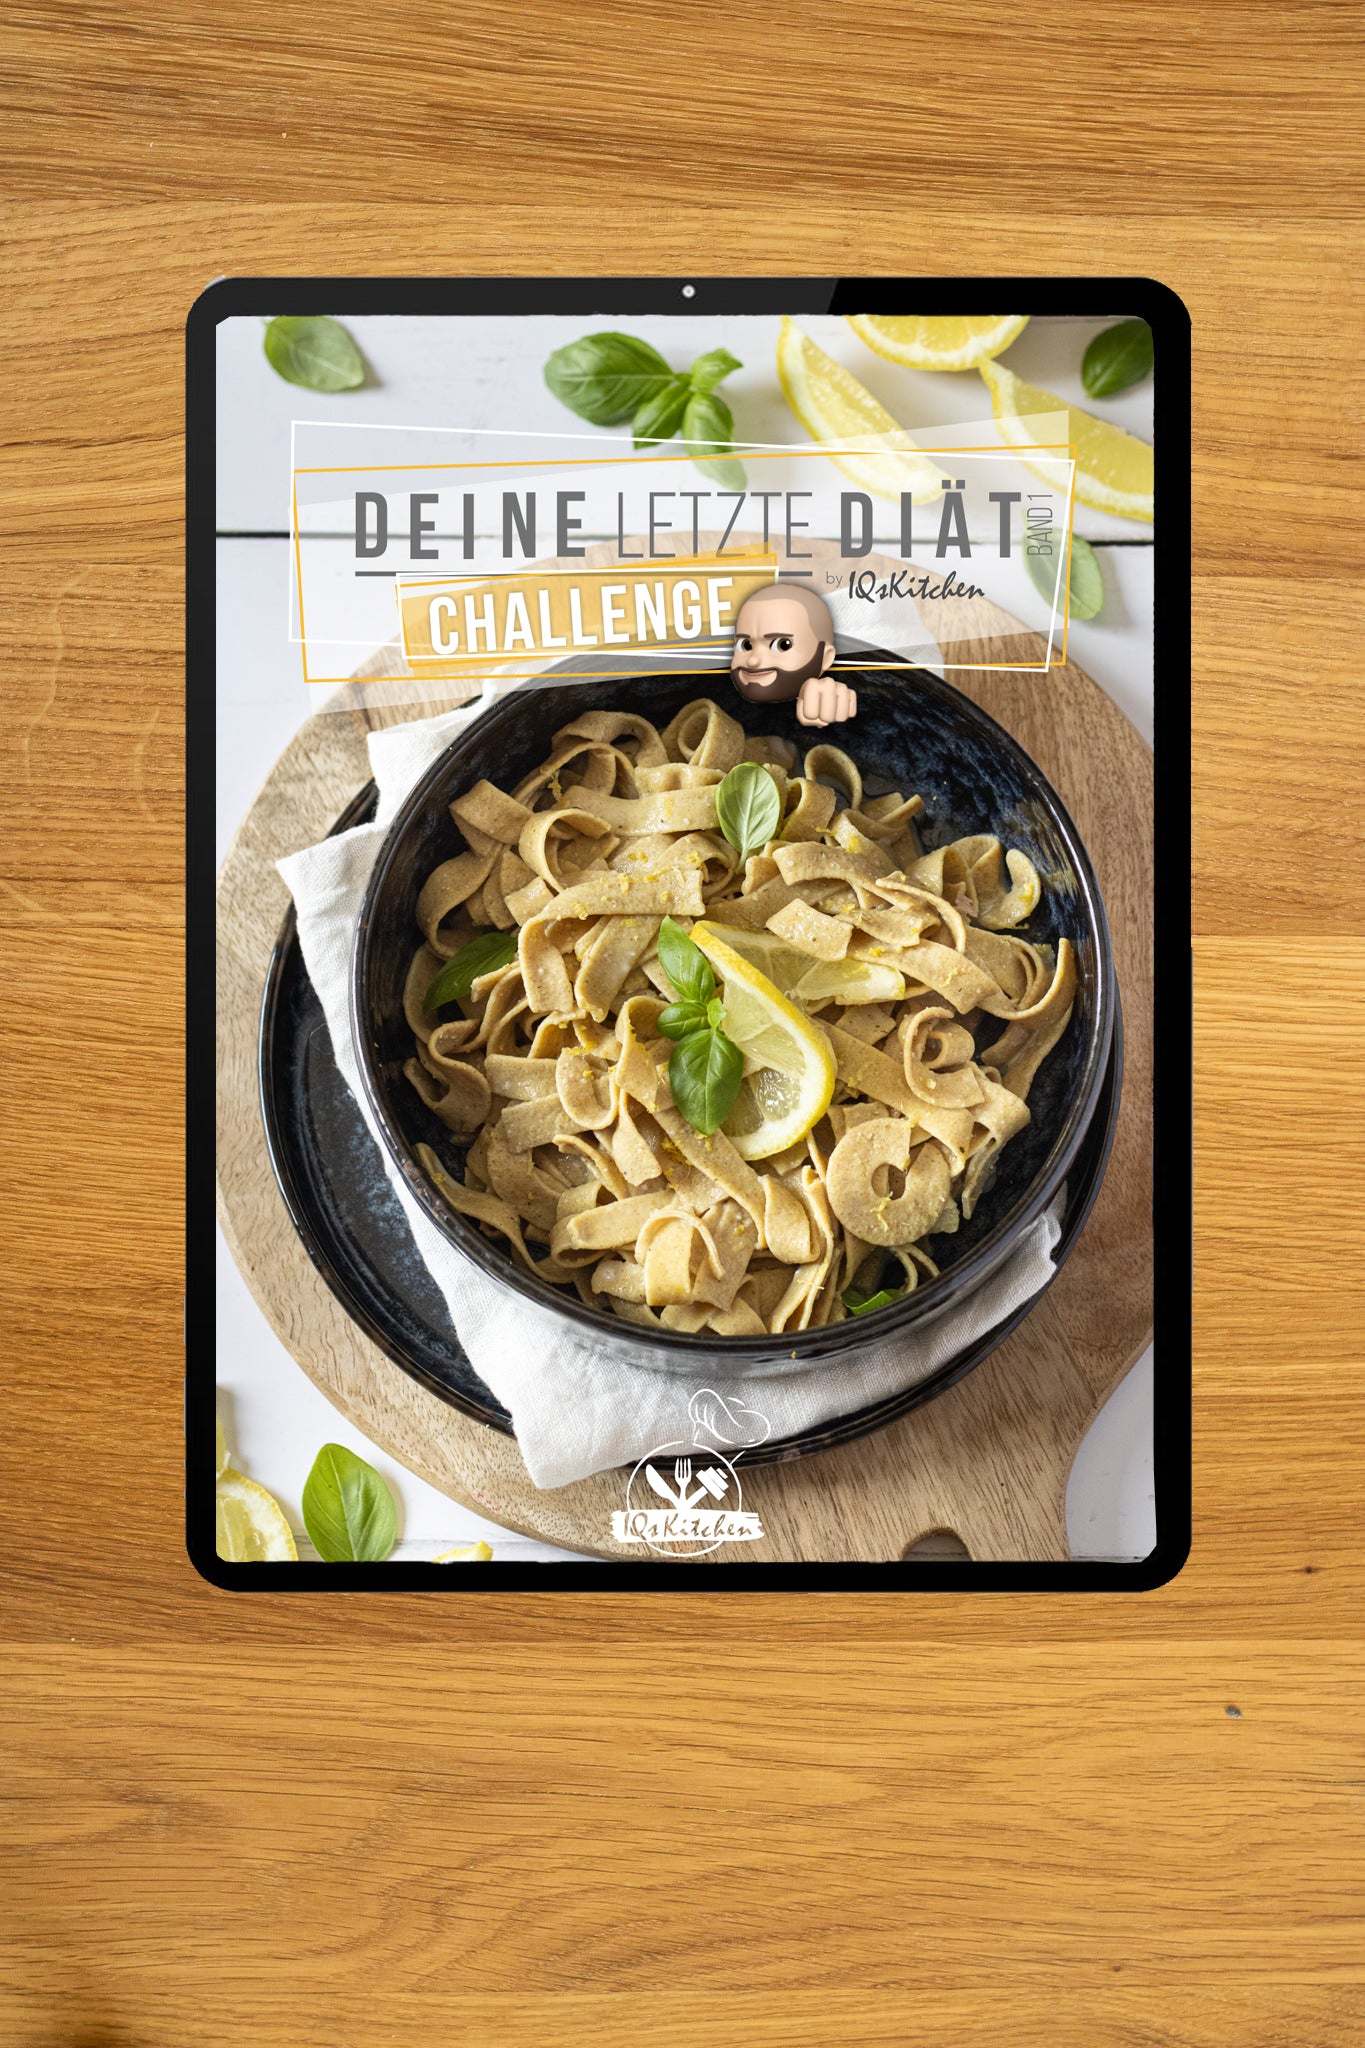 Deine letzte Diät Band 1 | Die Challenge + Shaqes & Bowls | eBook